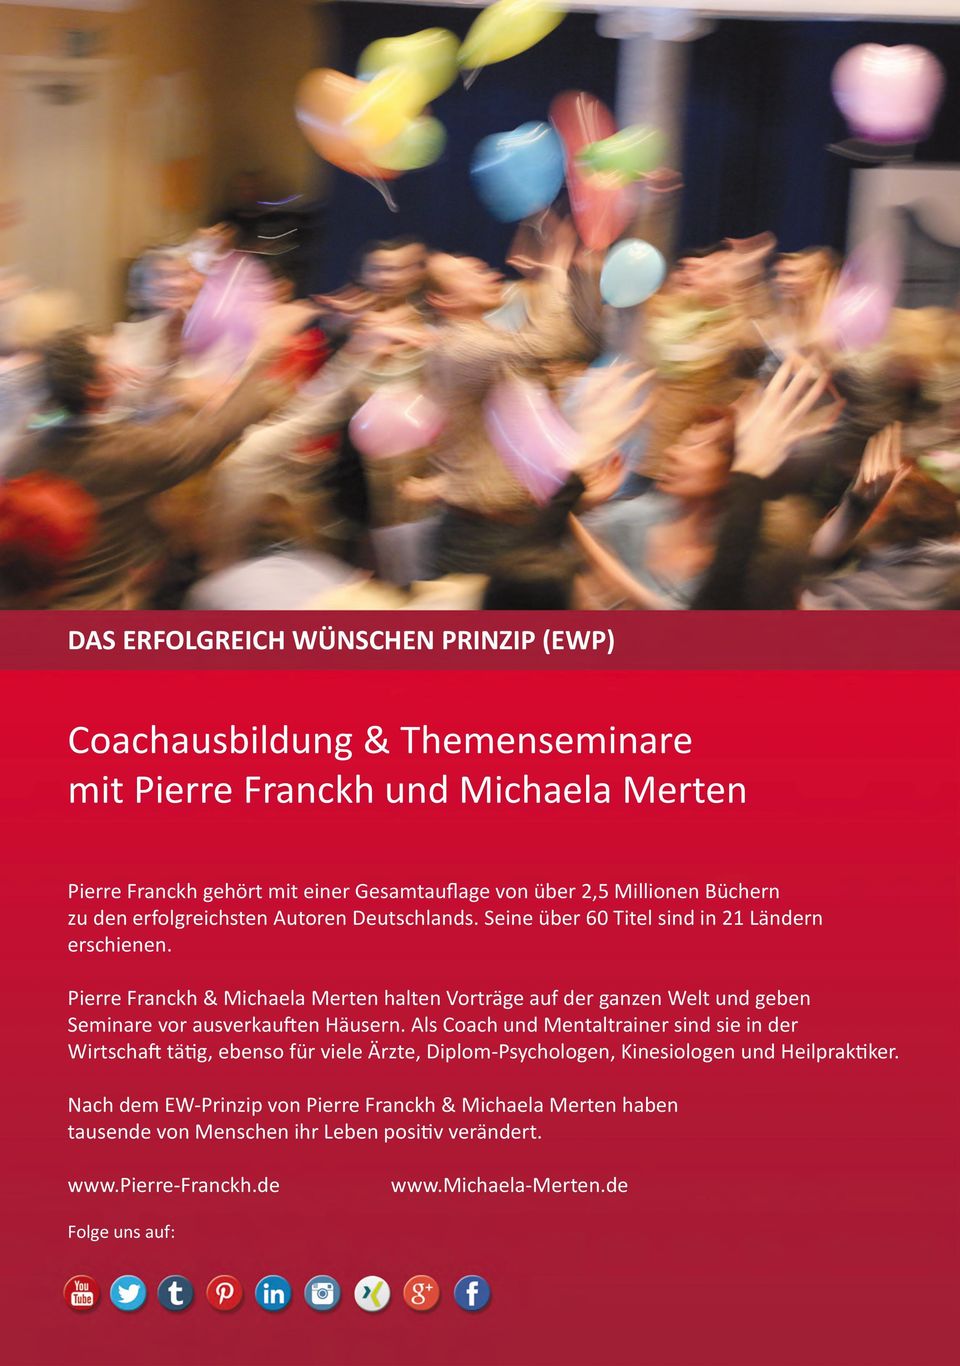 Pierre Franckh & Michaela Merten halten Vorträge auf der ganzen Welt und geben Seminare vor ausverkauften Häusern.